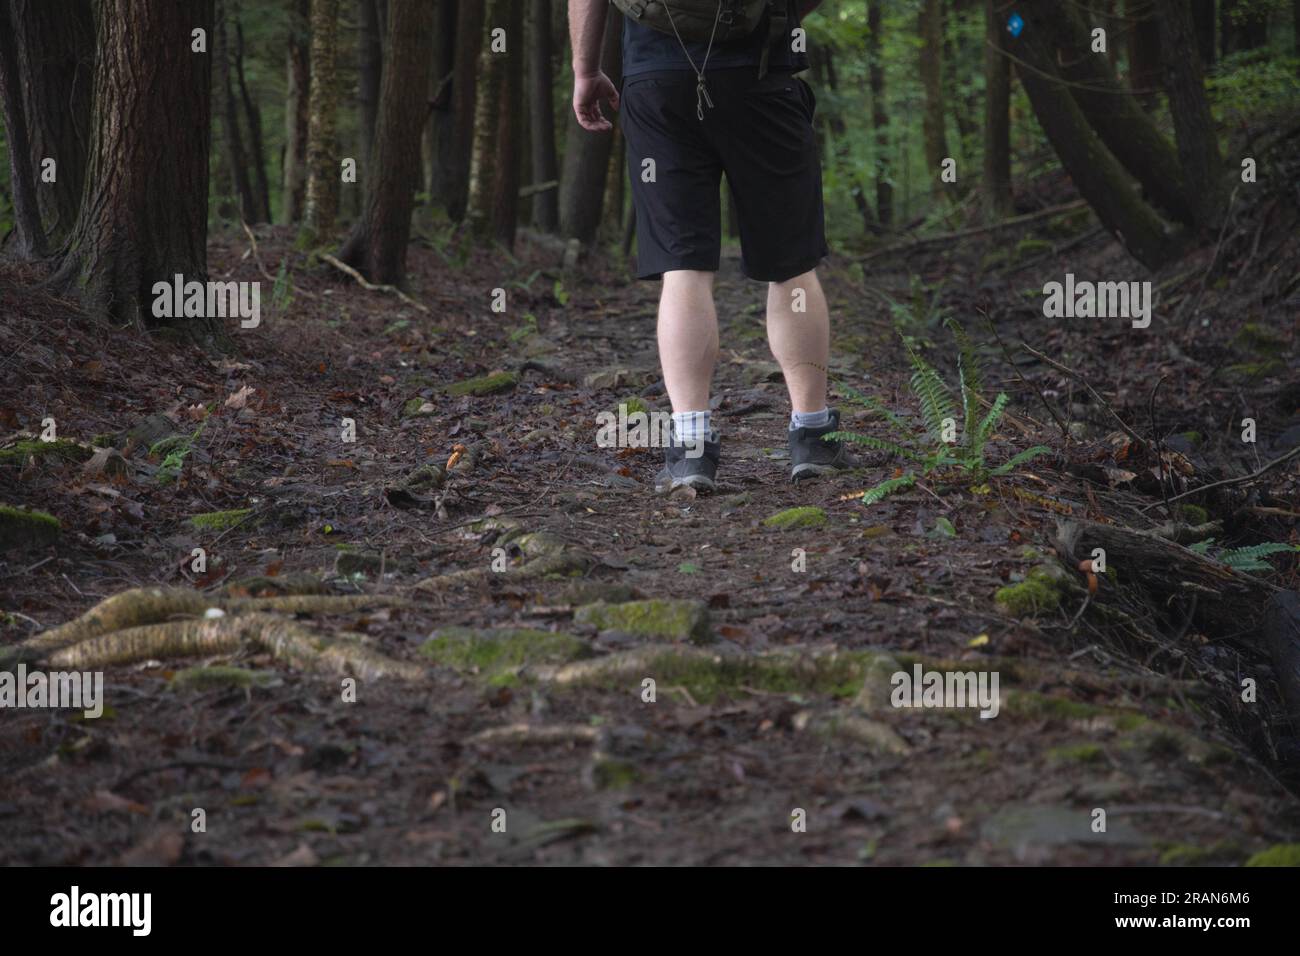 Escursionista su un sentiero che passa per ostacoli nel bosco si concentra su gambe e scarpe da trekking, all'interno del sentiero forestale, copia spazio striscione tema sfondi. Foto Stock